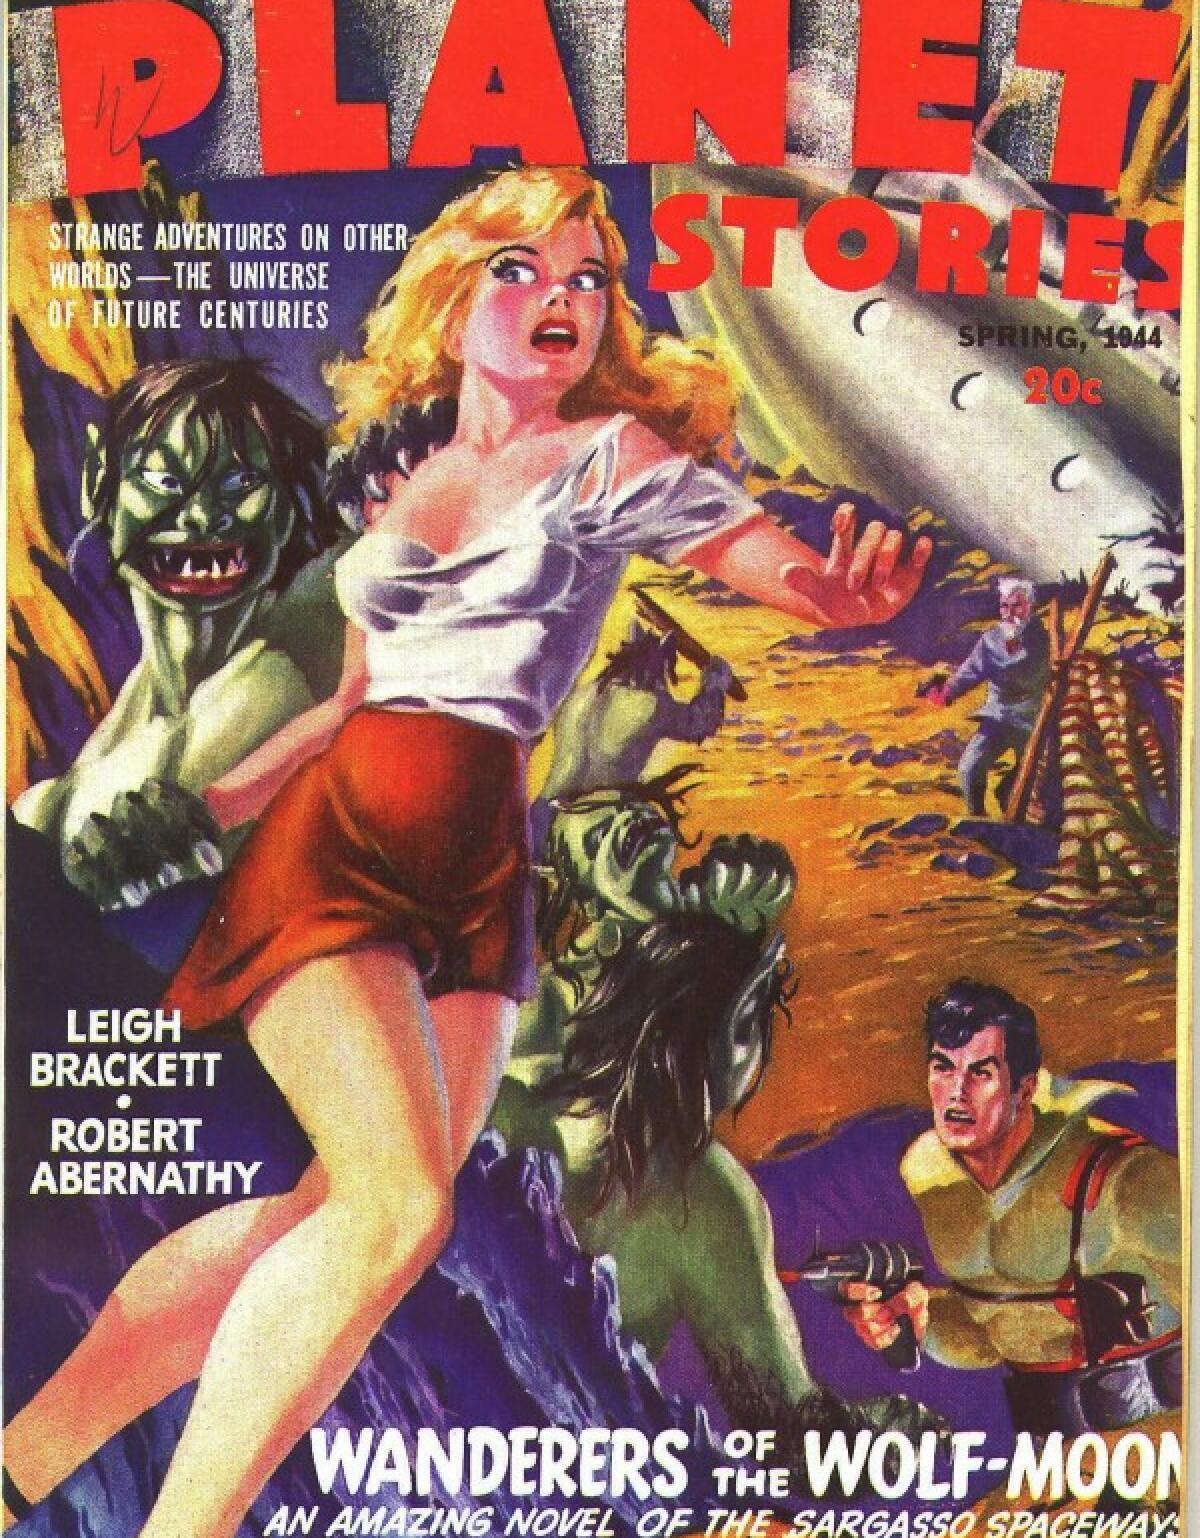 Couverture d'un magazine « pulp » des années 1940.